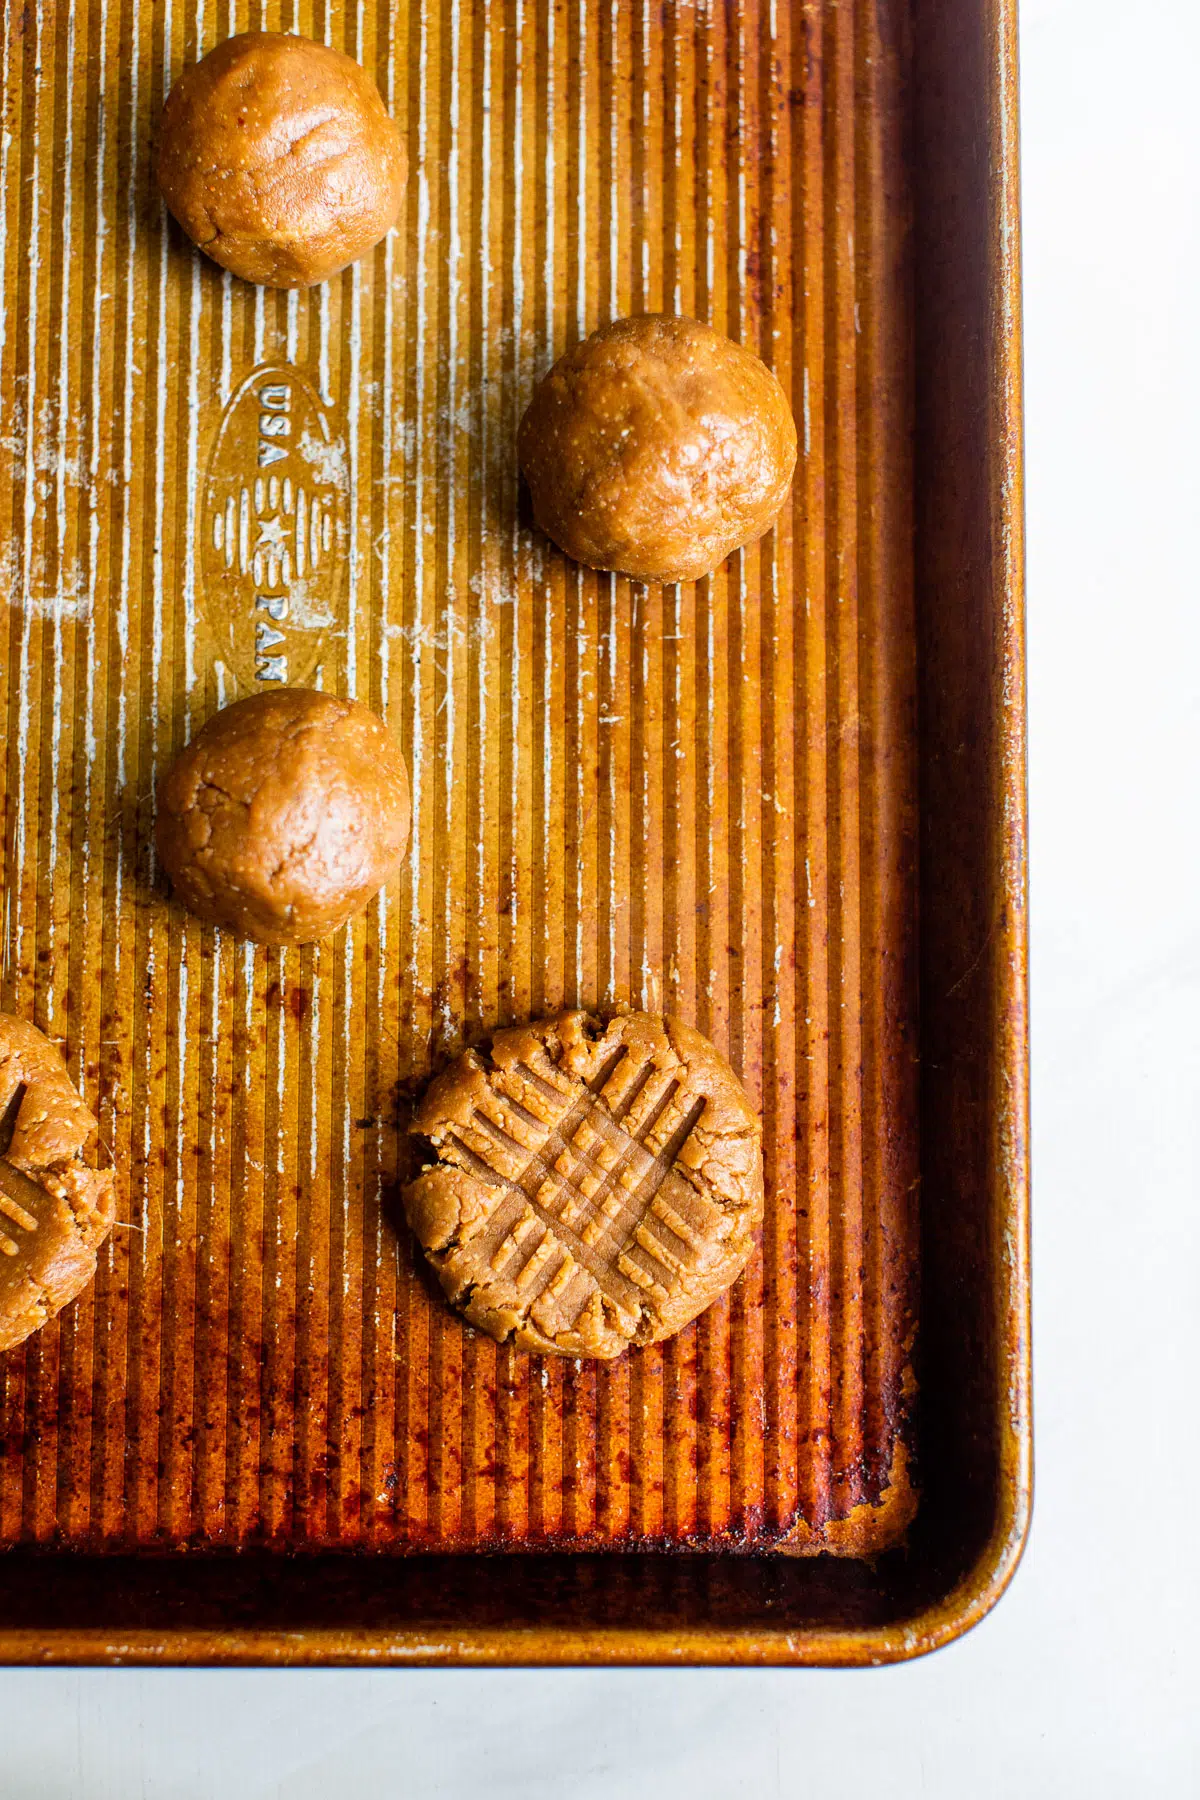 raw peanut butter cookie dough balls on a baking sheet